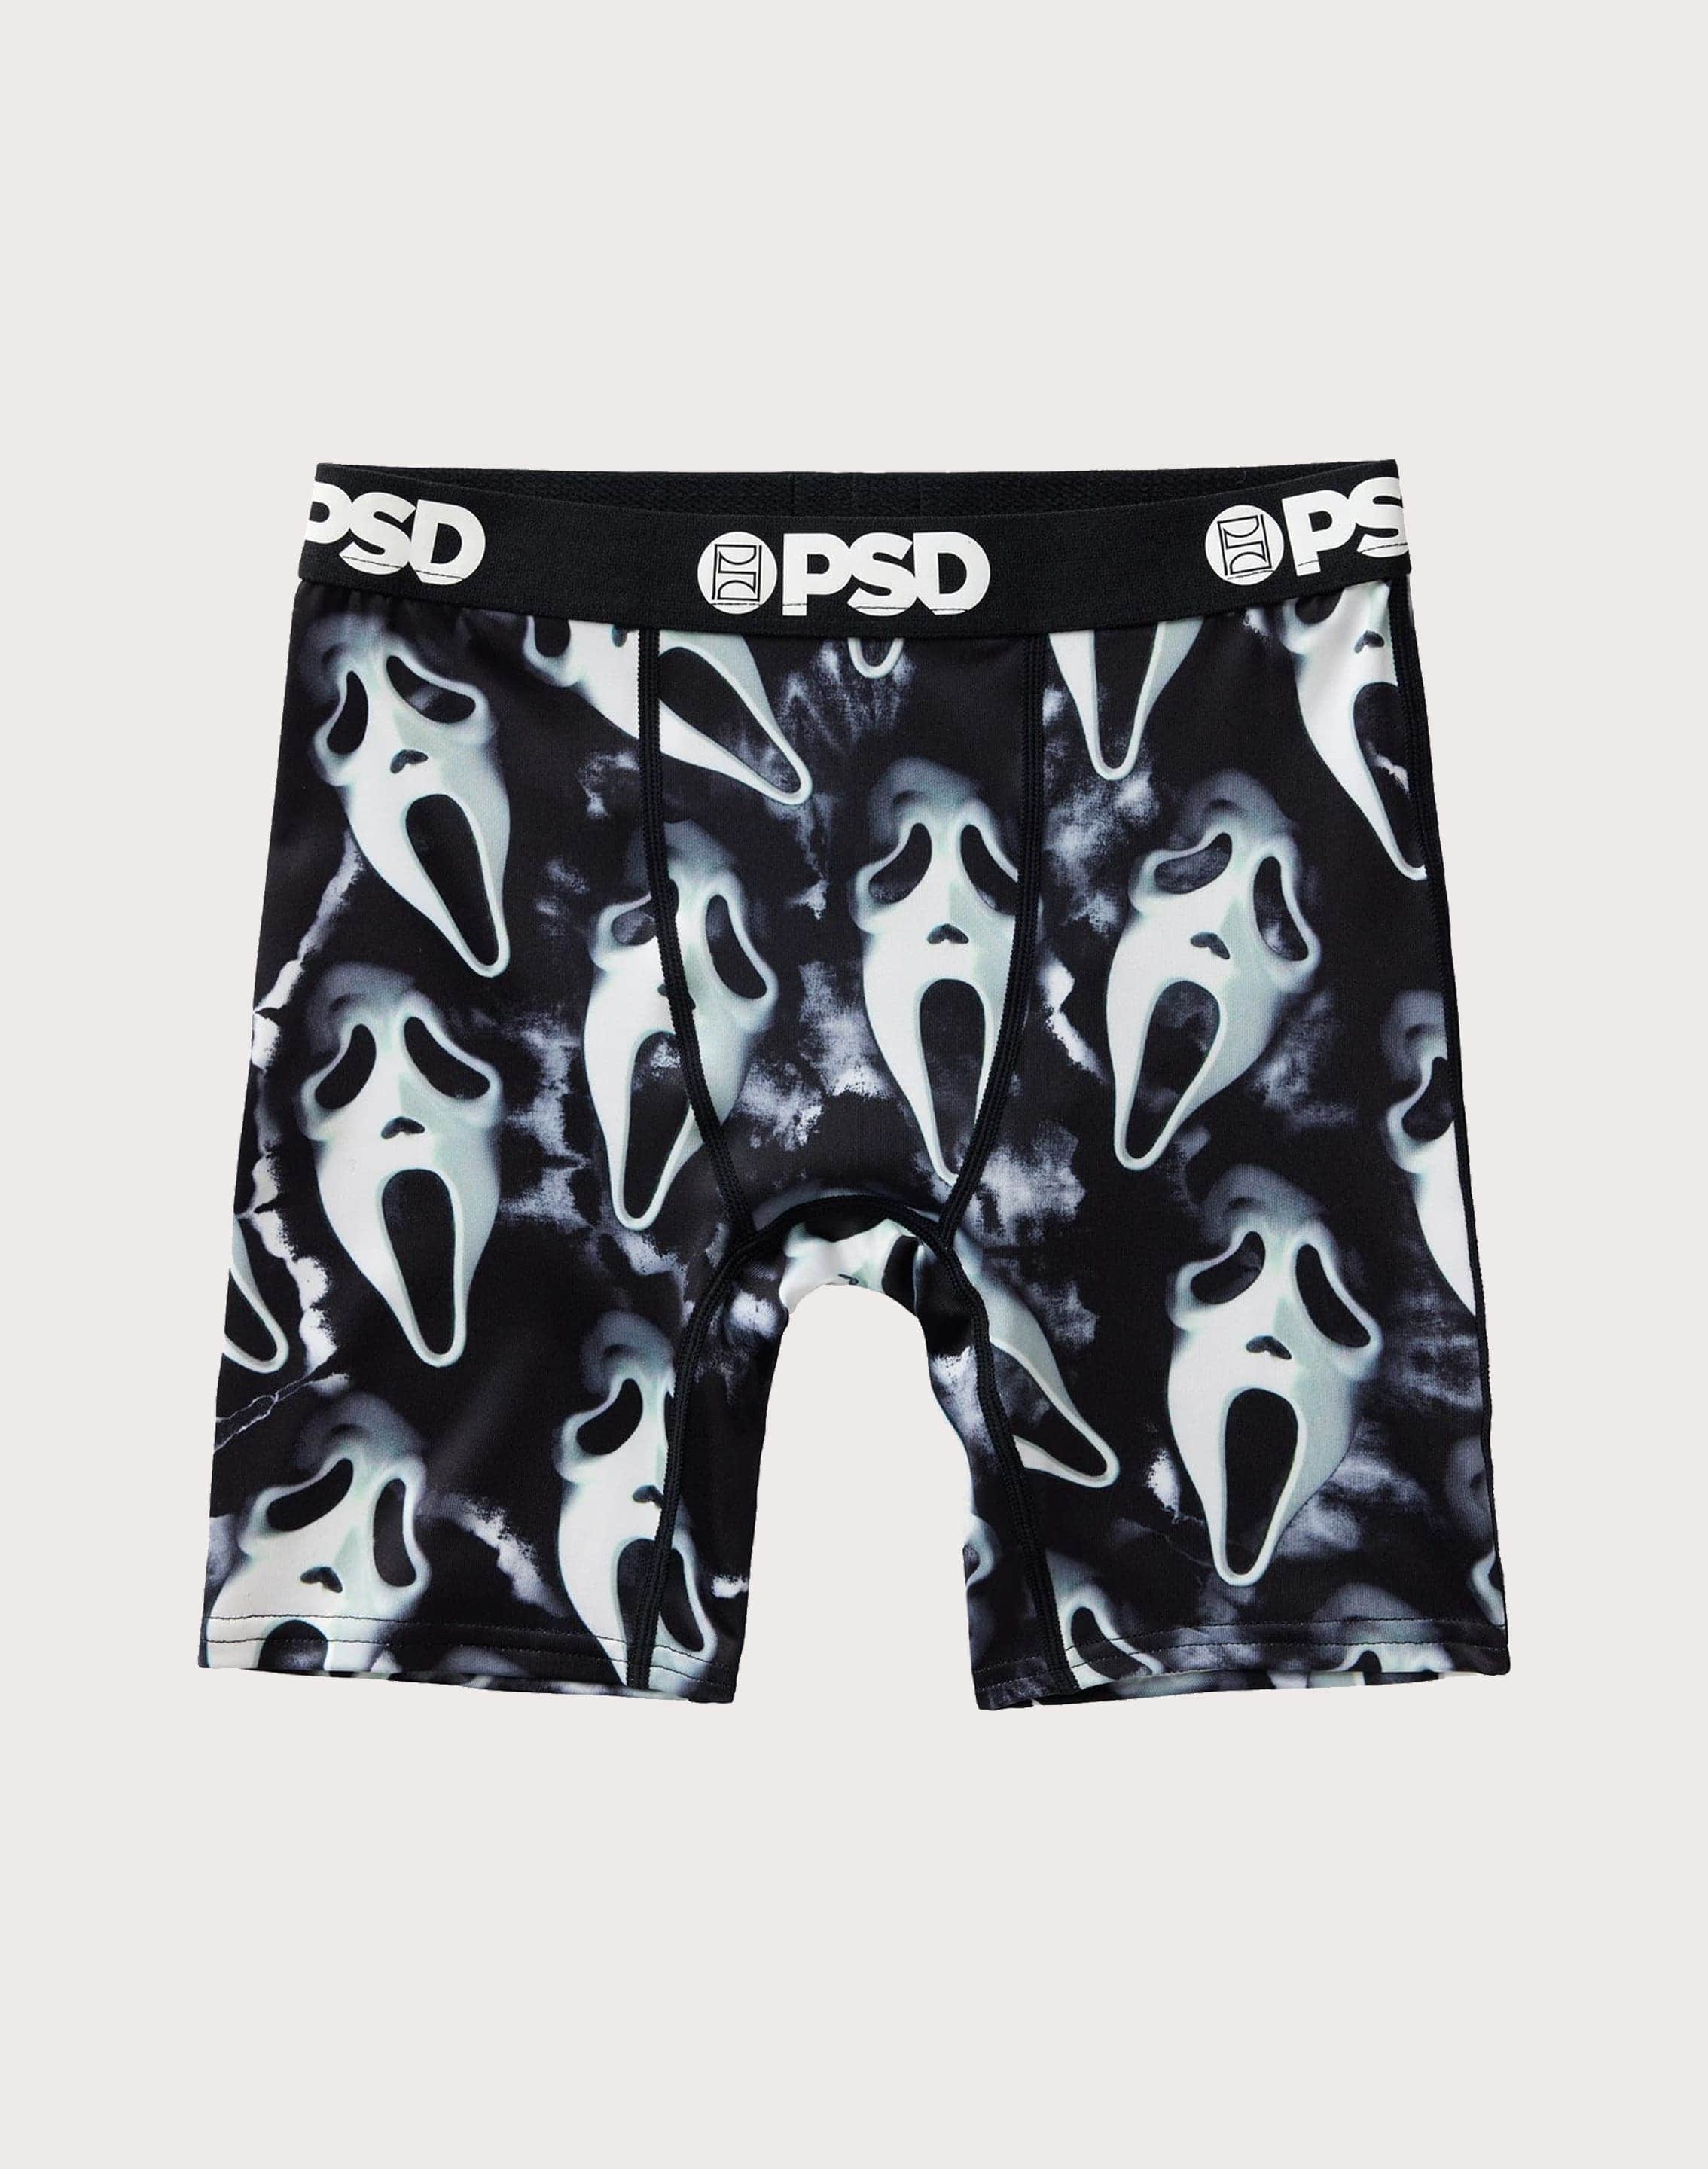 Psd Underwear Ghost Face Boxer Briefs – DTLR